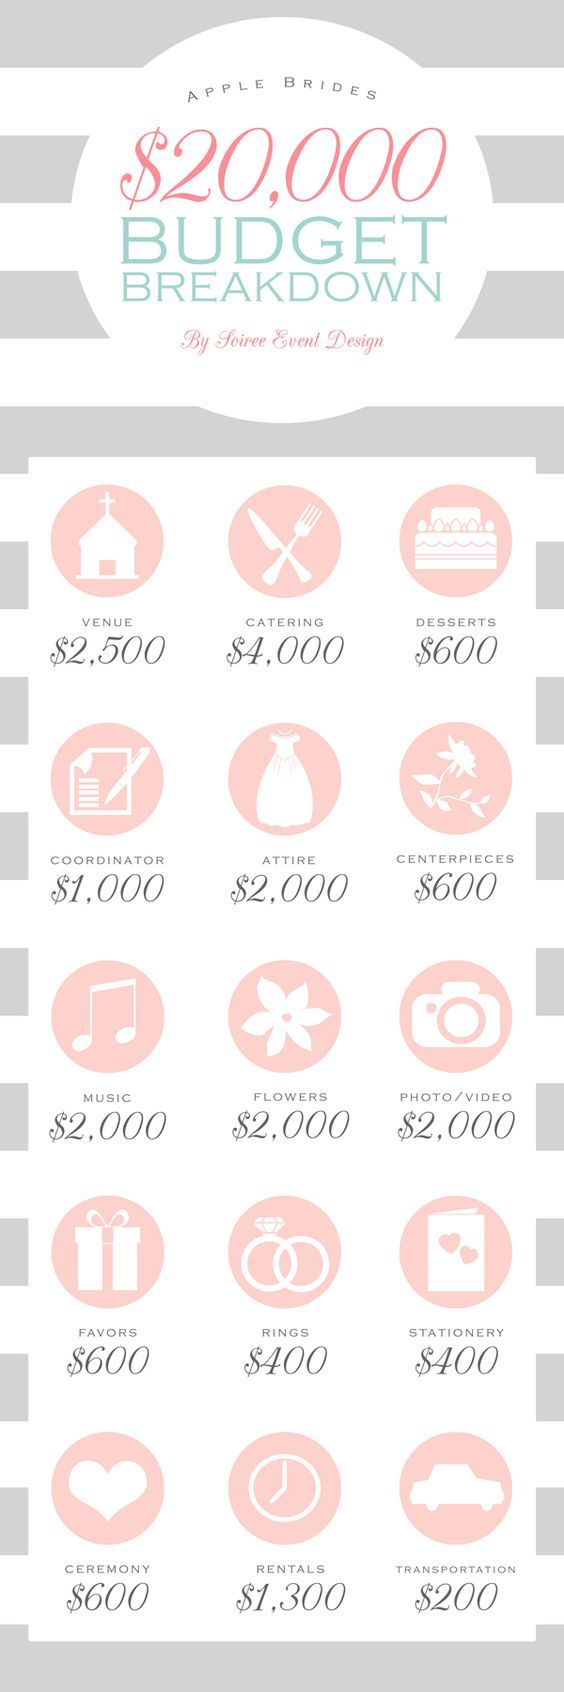 Hochzeit - Budget Breakdown For A $20,000 Wedding